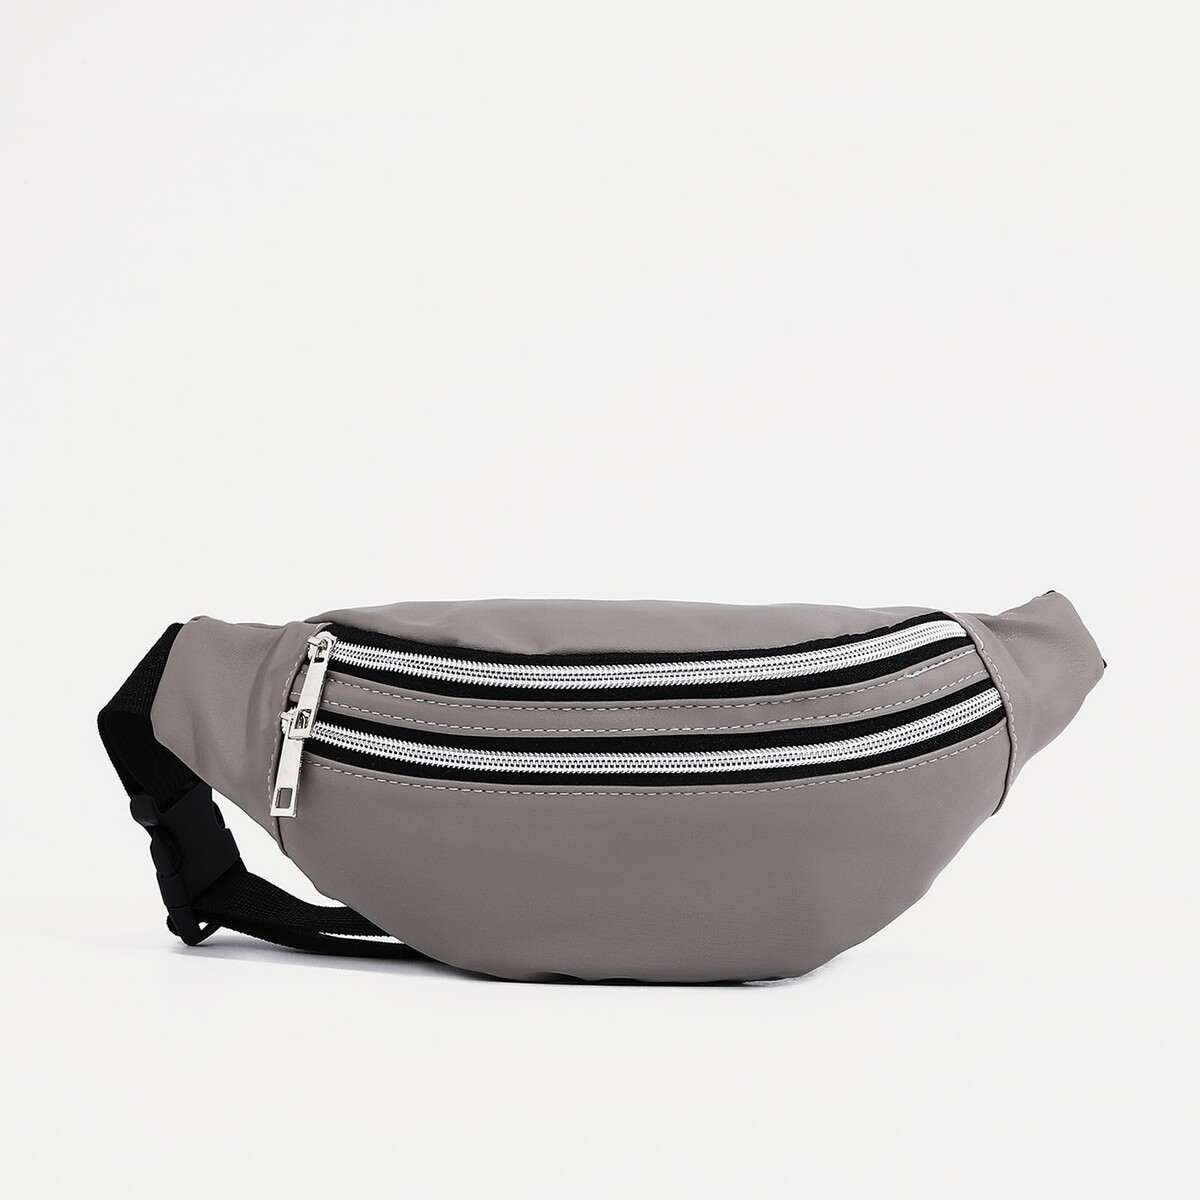 Поясная сумка на молнии, наружный карман, цвет серый поясная сумка на молнии наружный карман серый